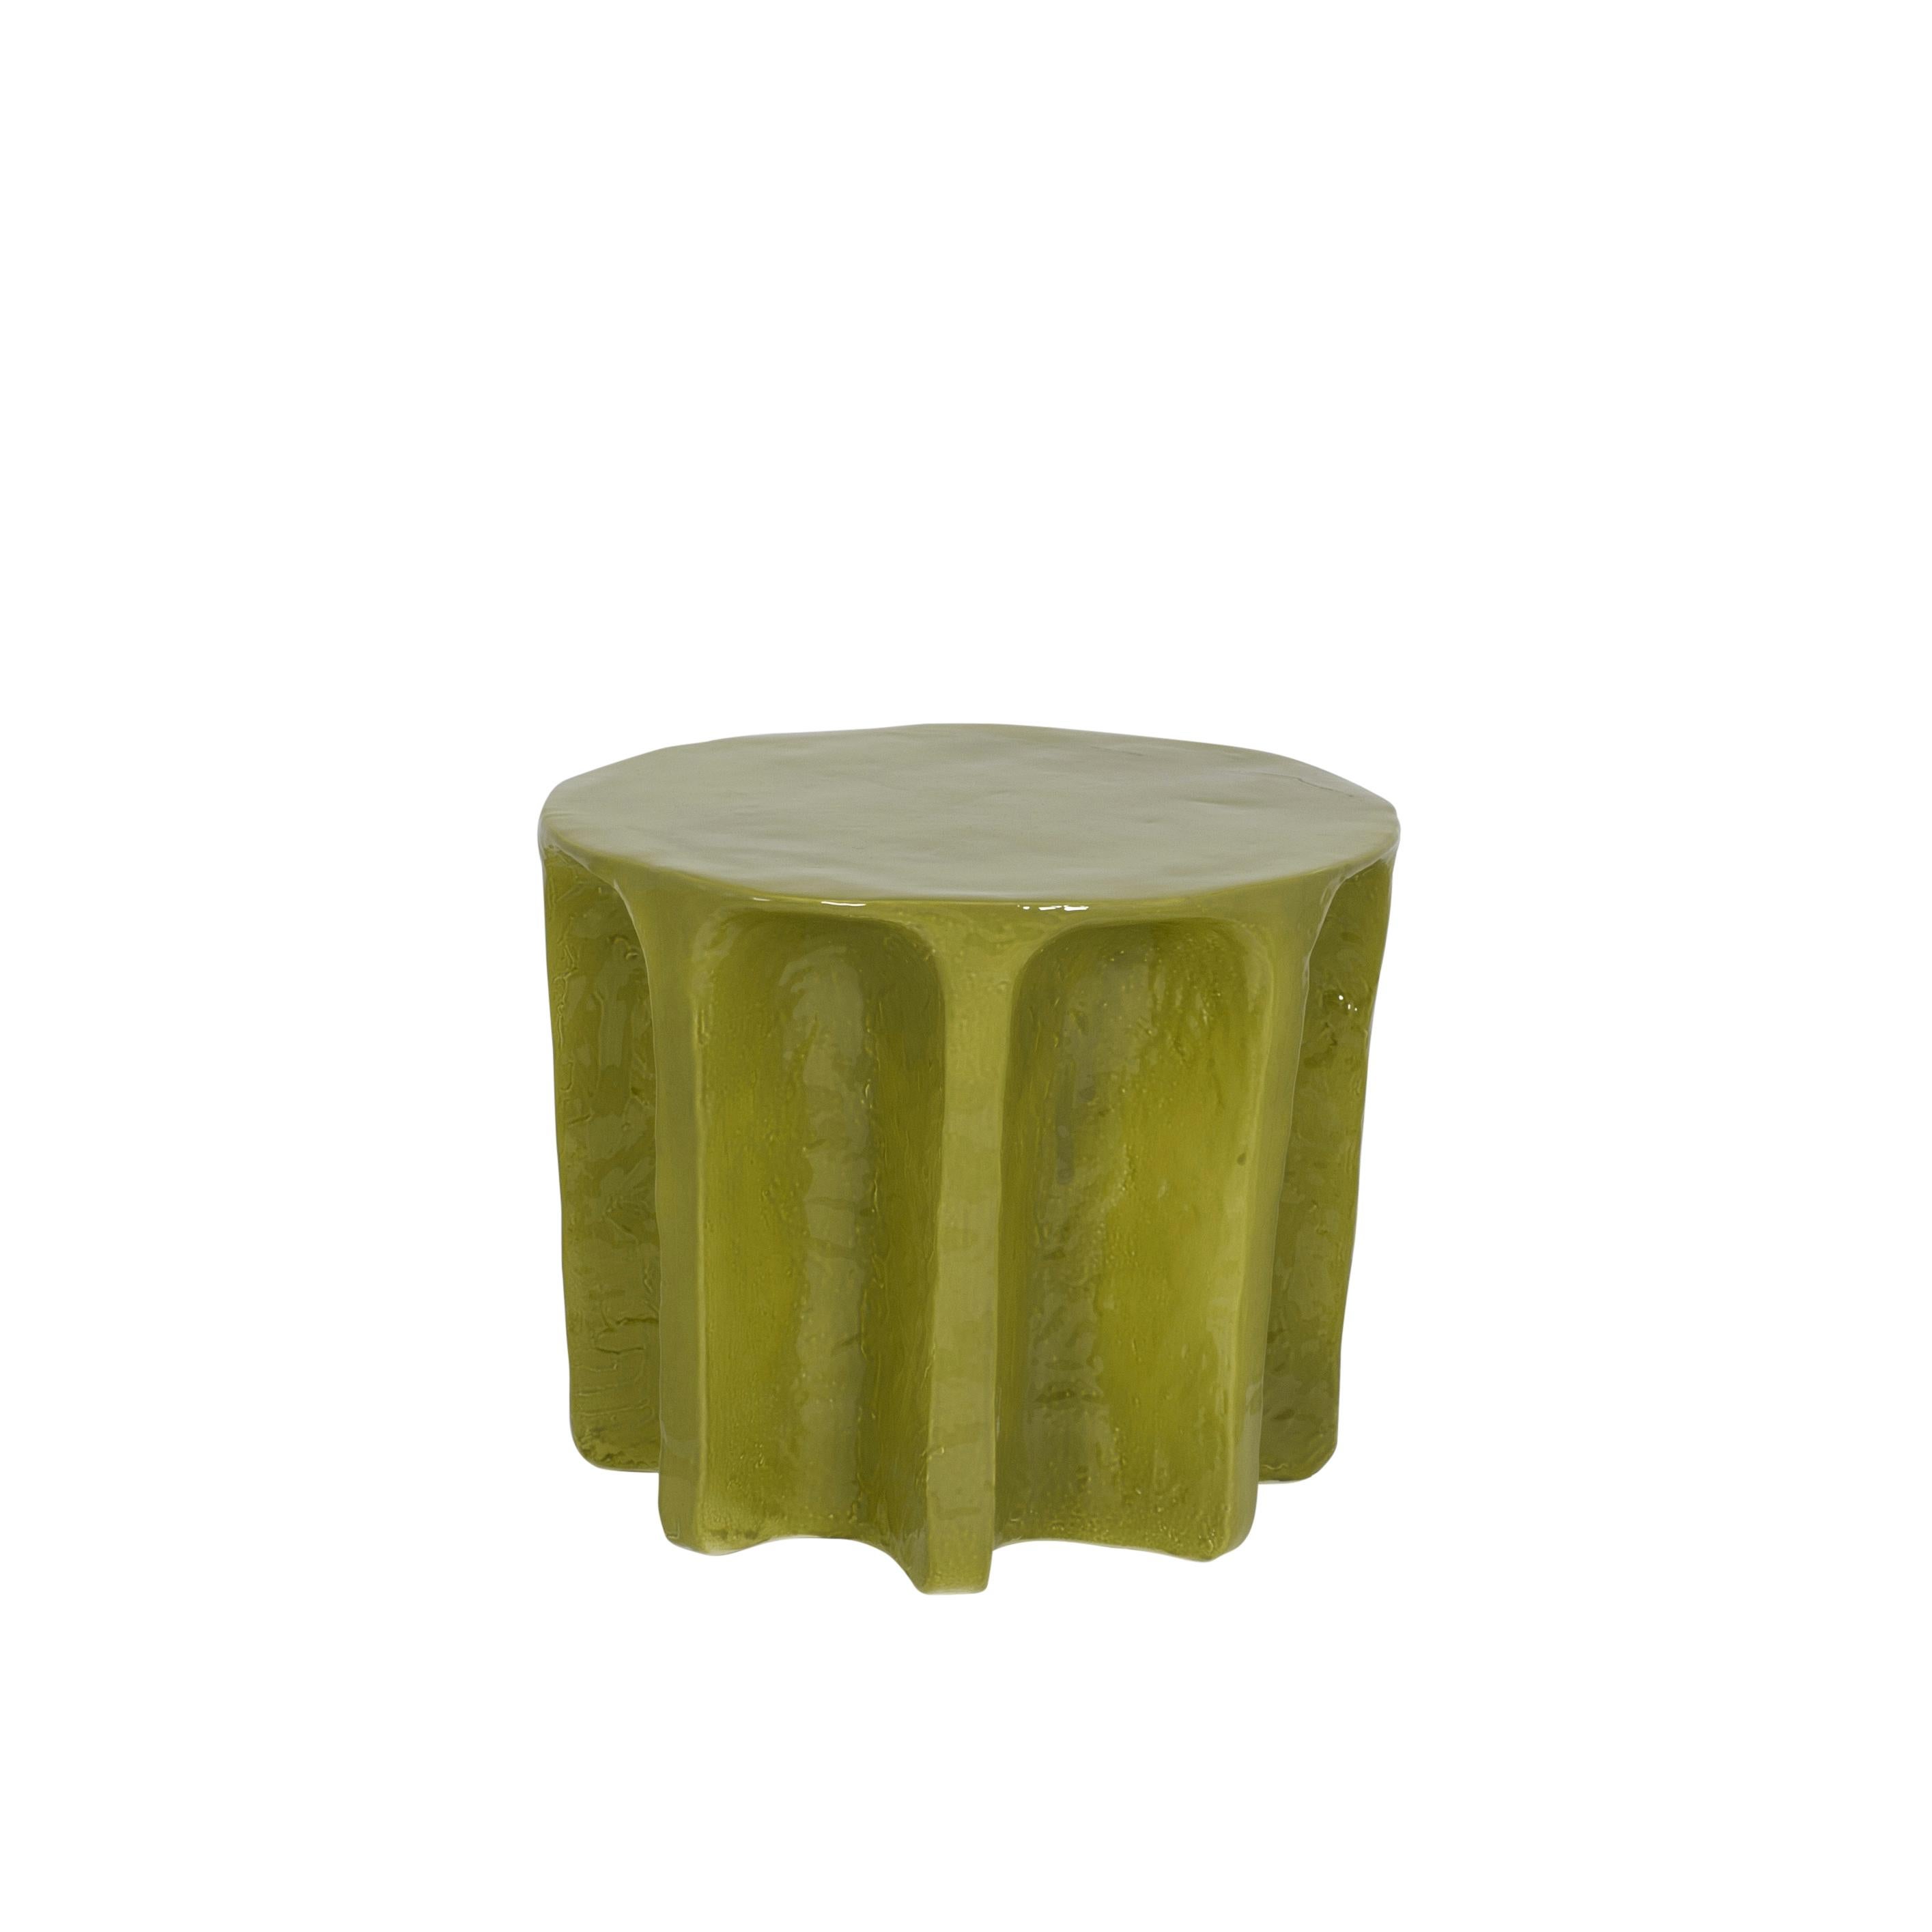 Table basse ronde verte Chouchou de Pulpo
Dimensions : D55 x H45 cm
Matériaux : céramique

Également disponible en différentes couleurs.

Chouchou porte les contours d'une colonne antique - ce qui, connaissant le designer Lorenzo Zanovello,